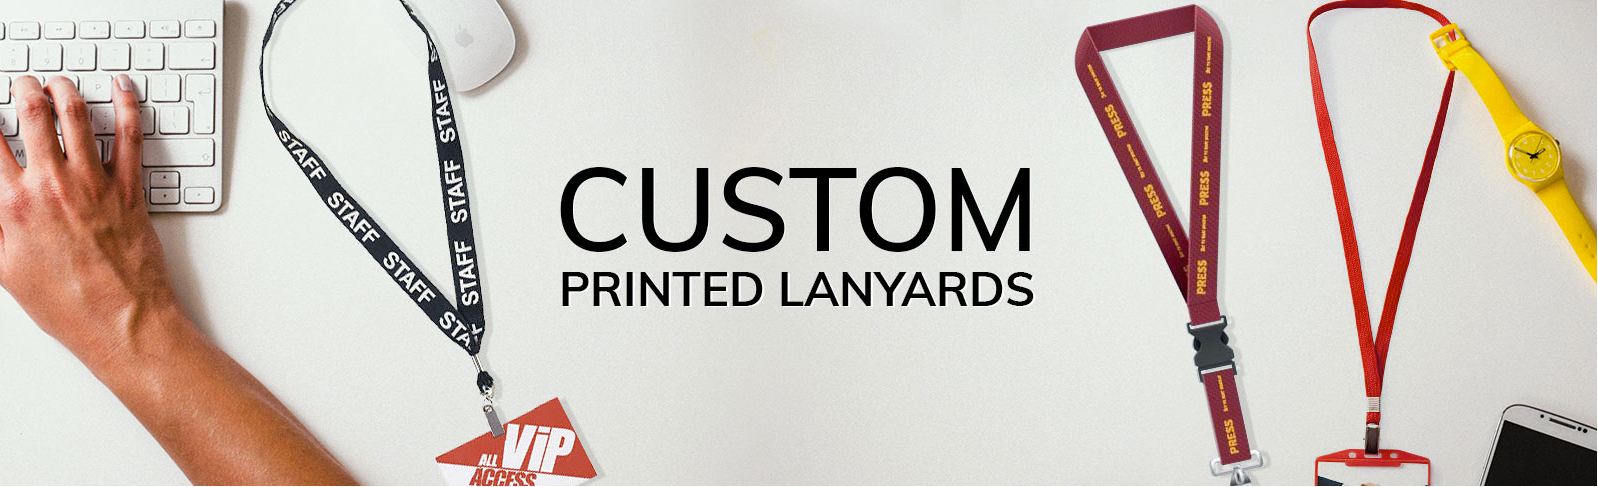 custom printed lanyards